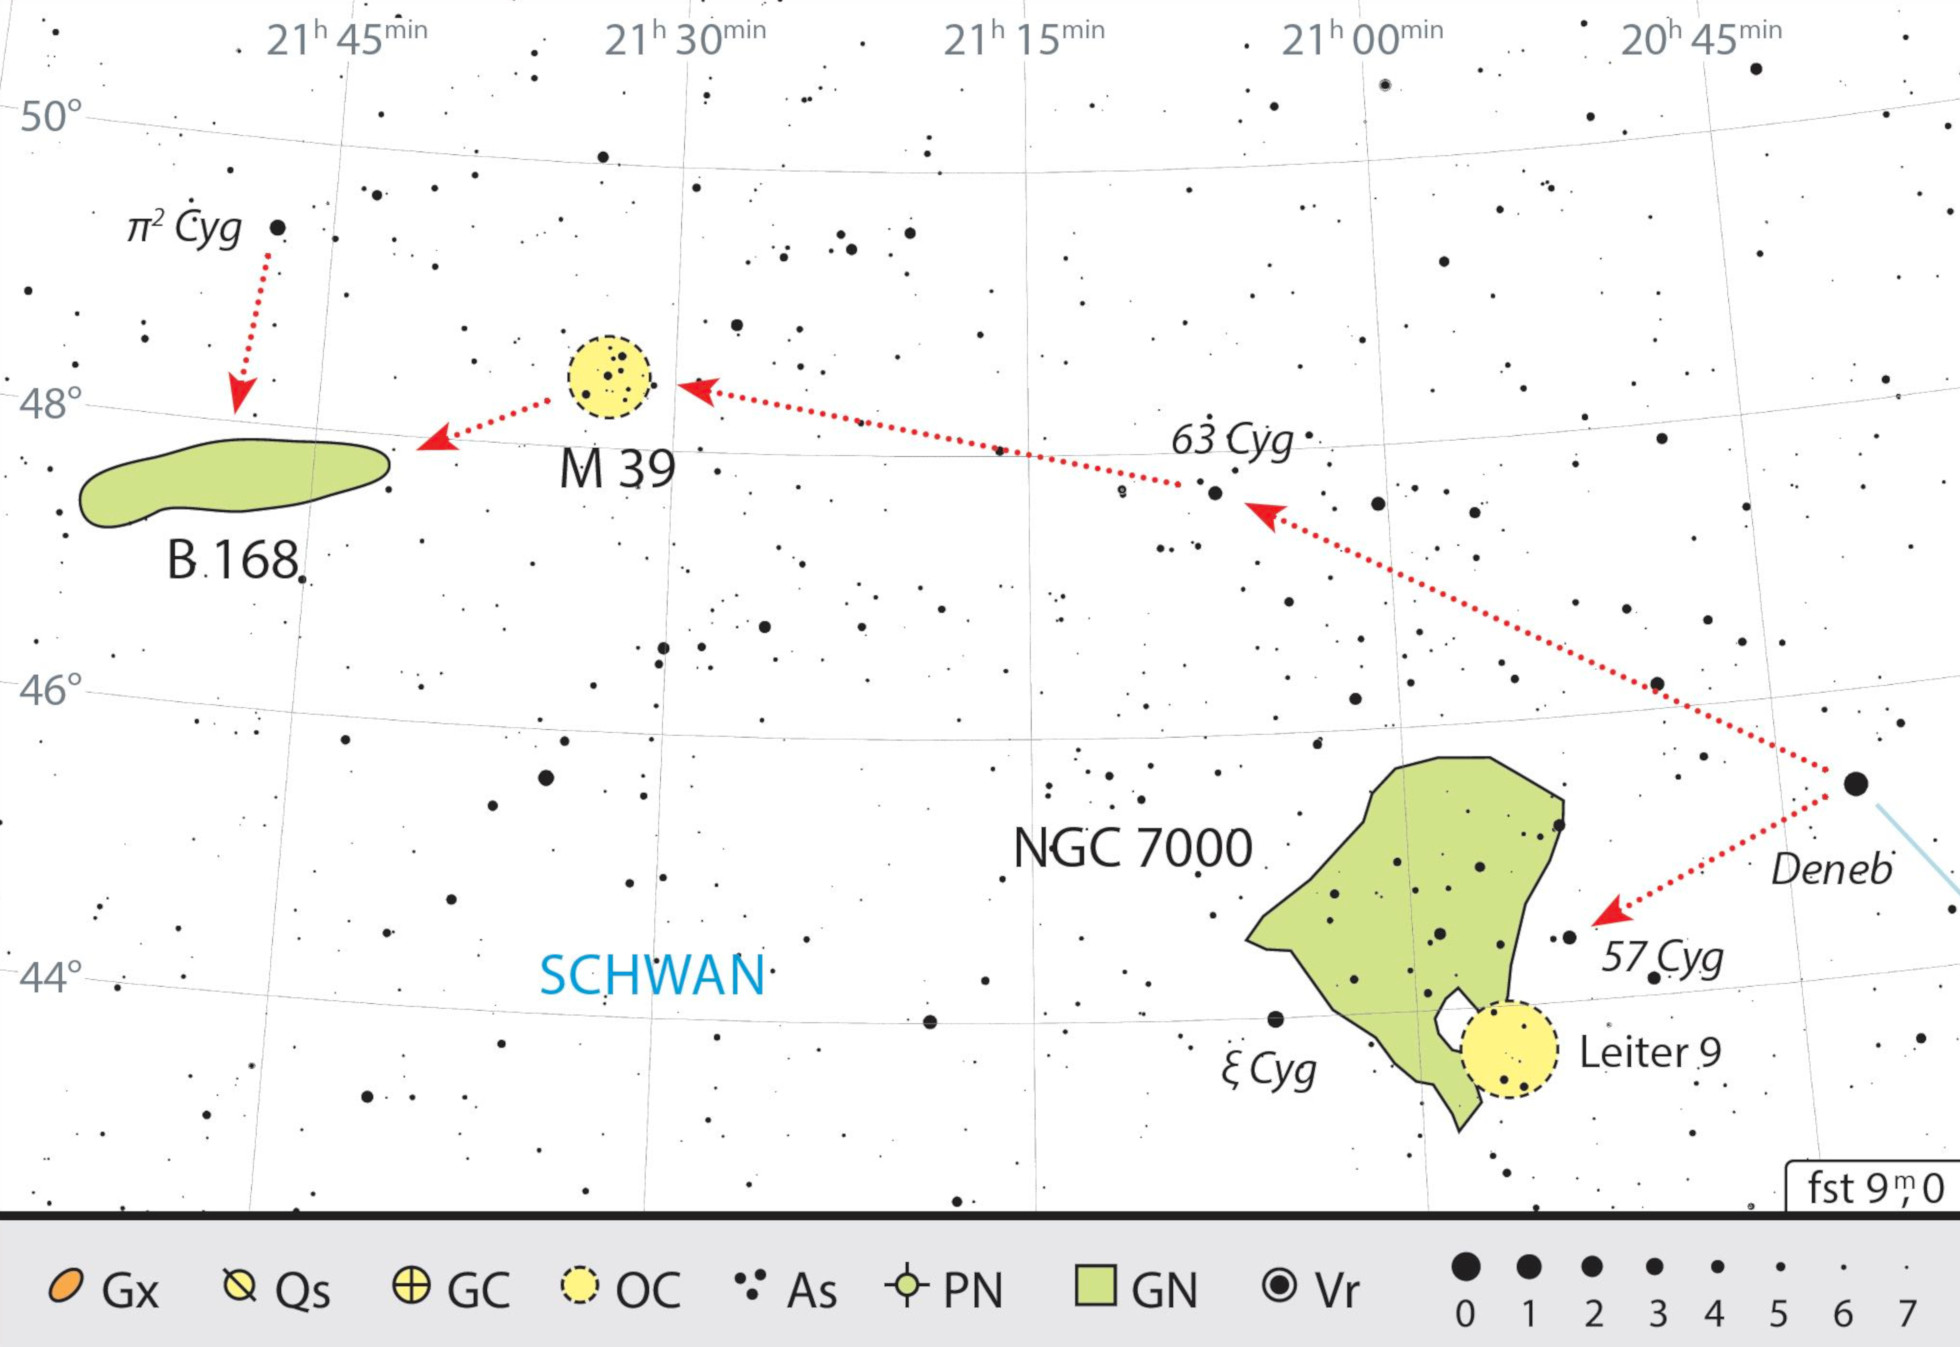 Deneb señala el camino hasta el objetivo de esta excursión celeste con binoculares. J. Scholten